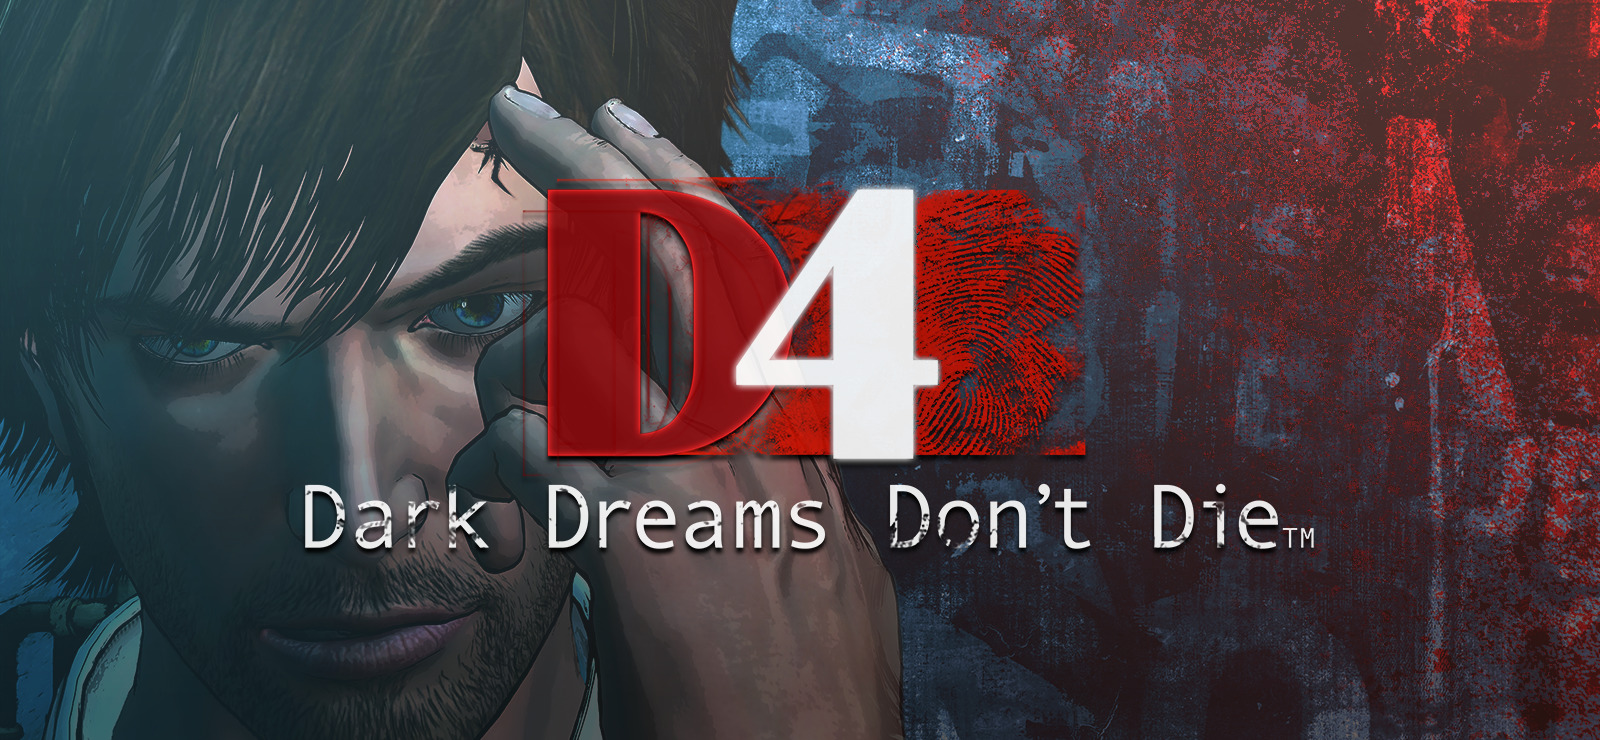 Dark Dreams don't die